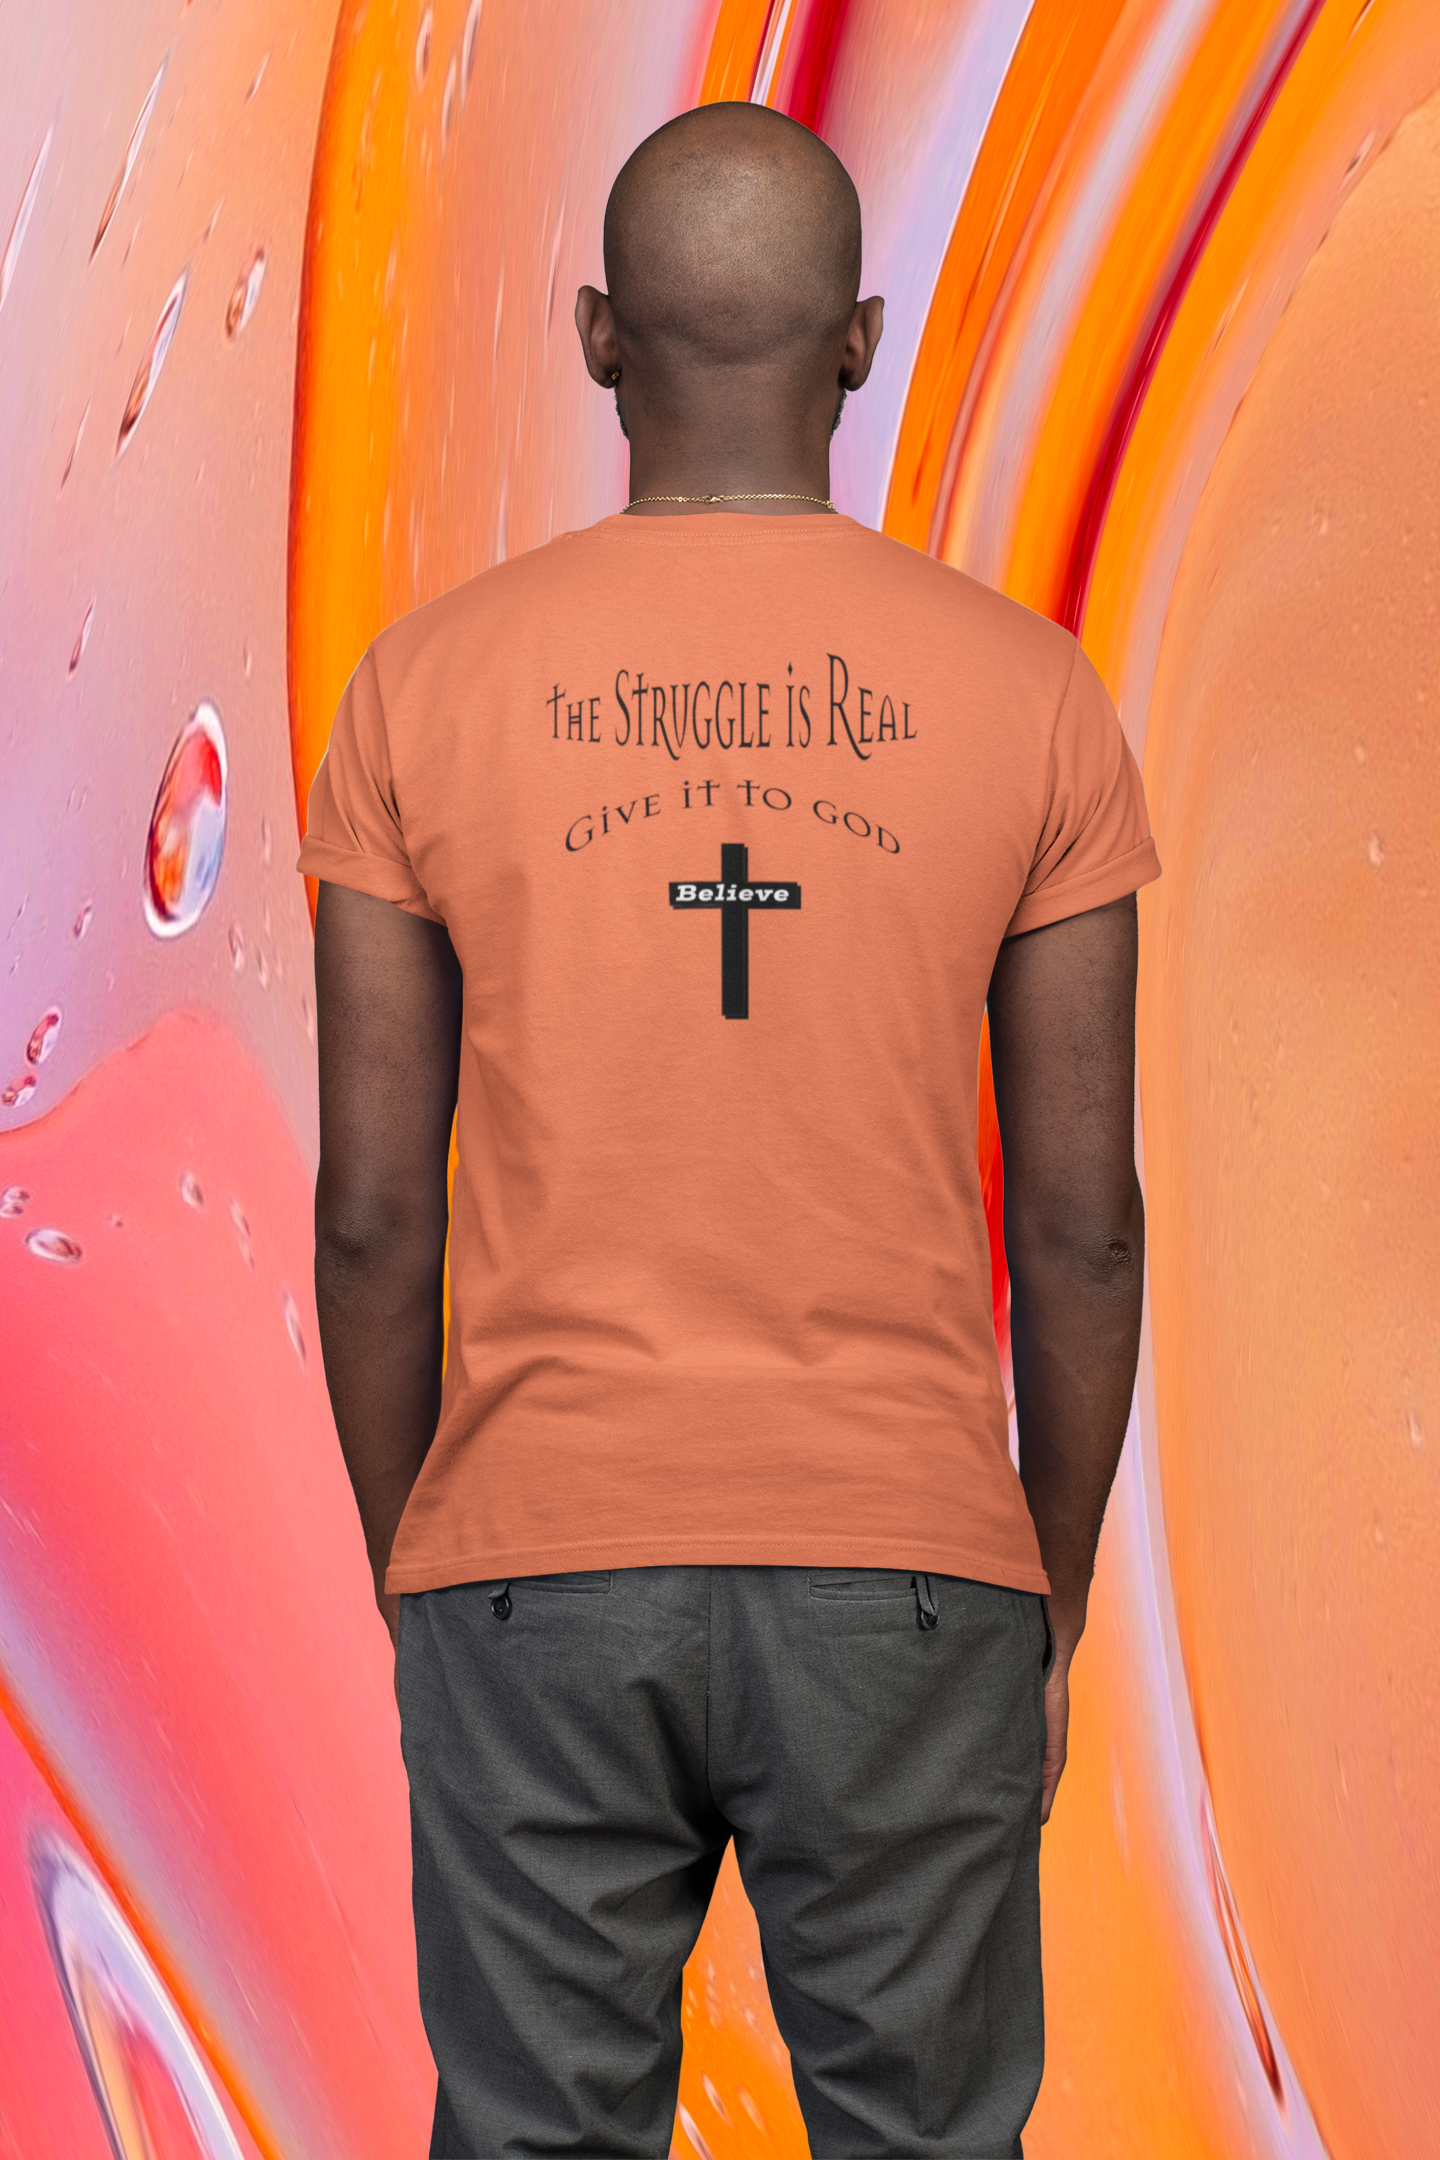 This Guy Loves Jesus - Religious Short-Sleeve Men's T-Shirt Aqua / M